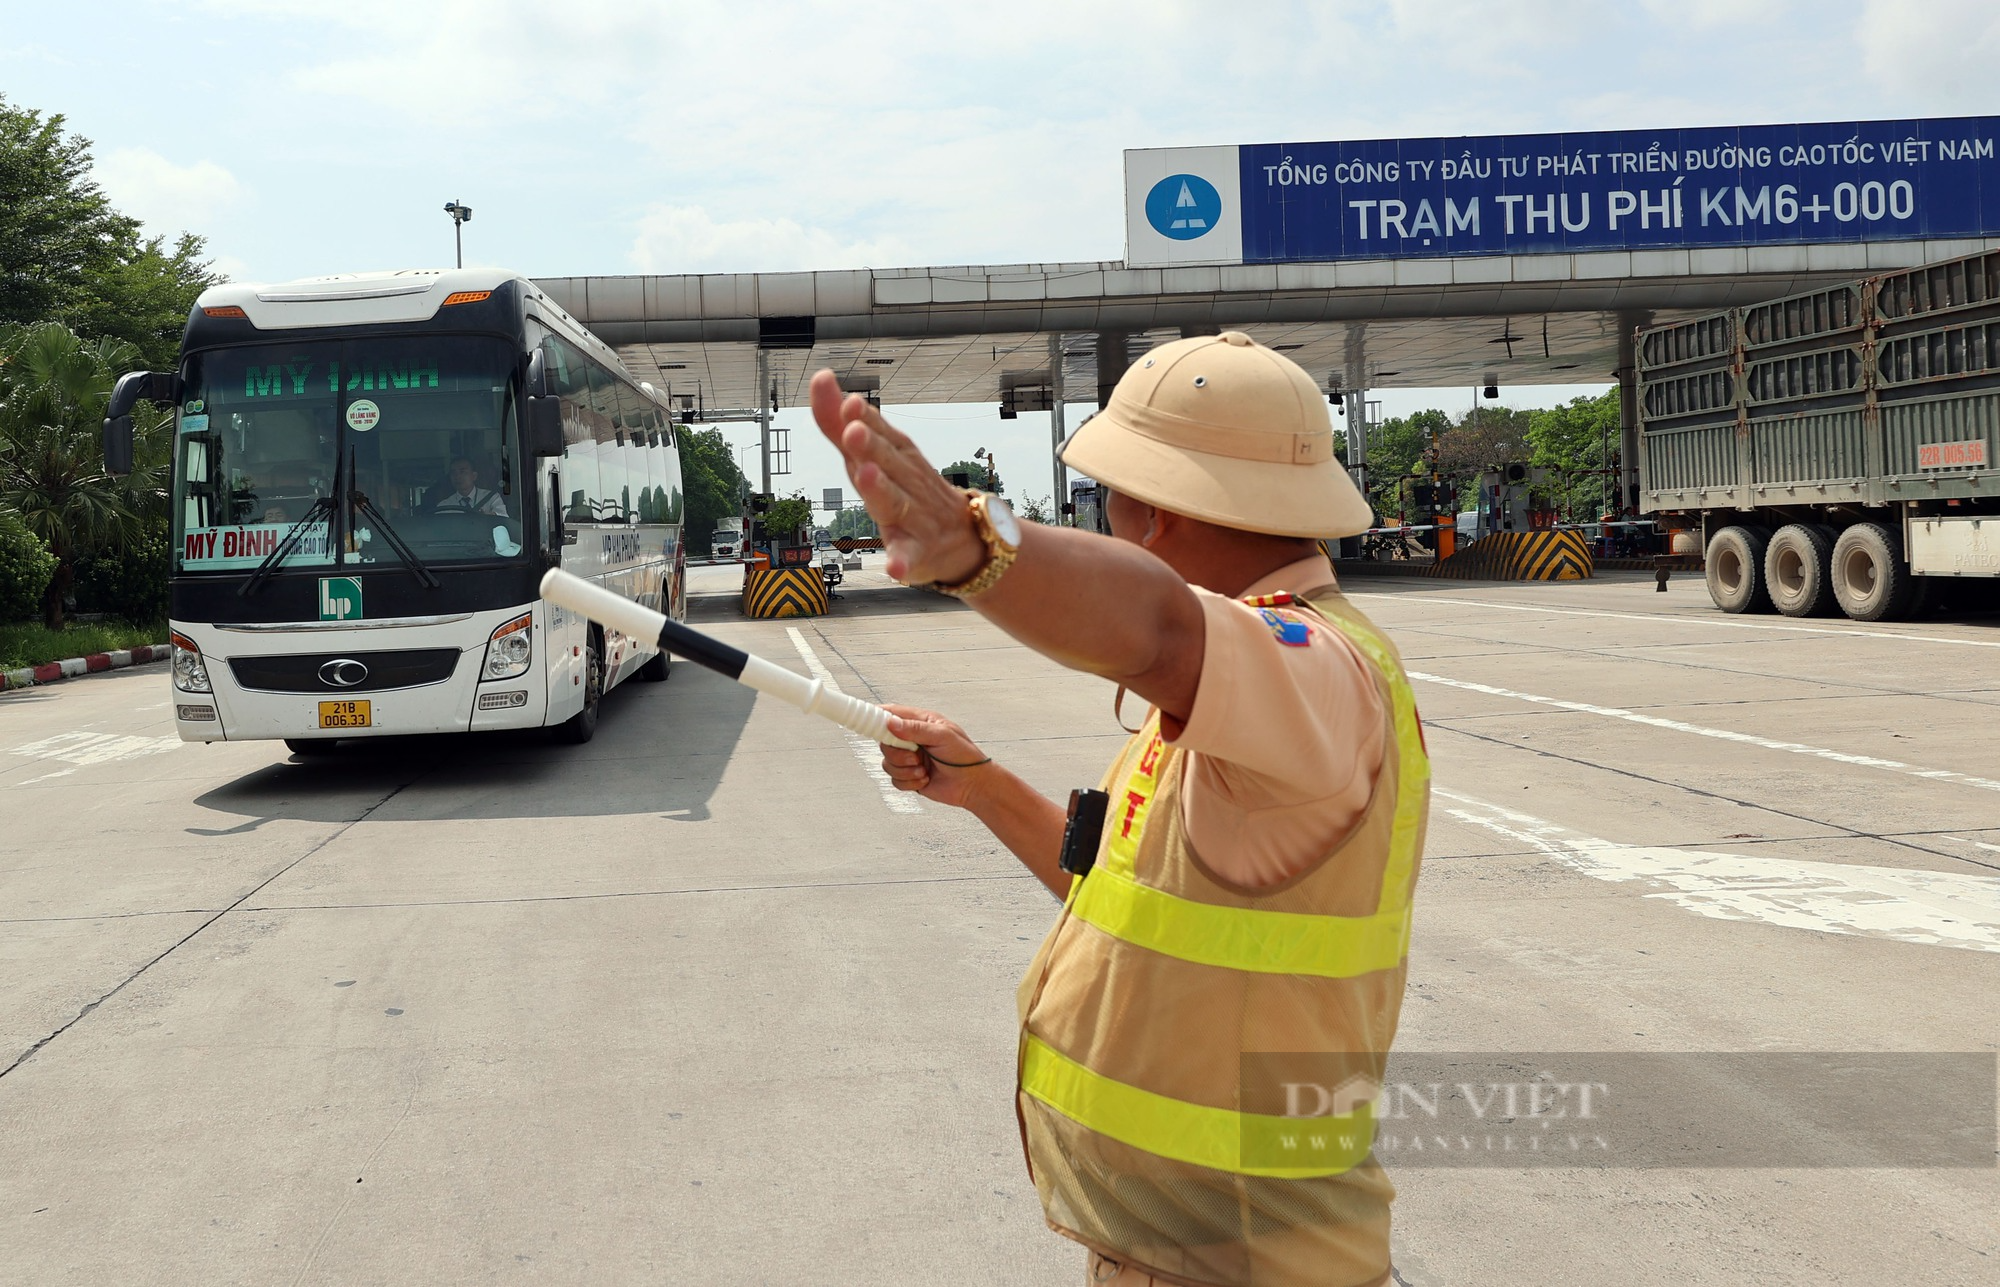 Hàng loạt xe khách vi phạm trên cao tốc Hà Nội - Lào Cai bị xử lý nghiêm - Ảnh 2.